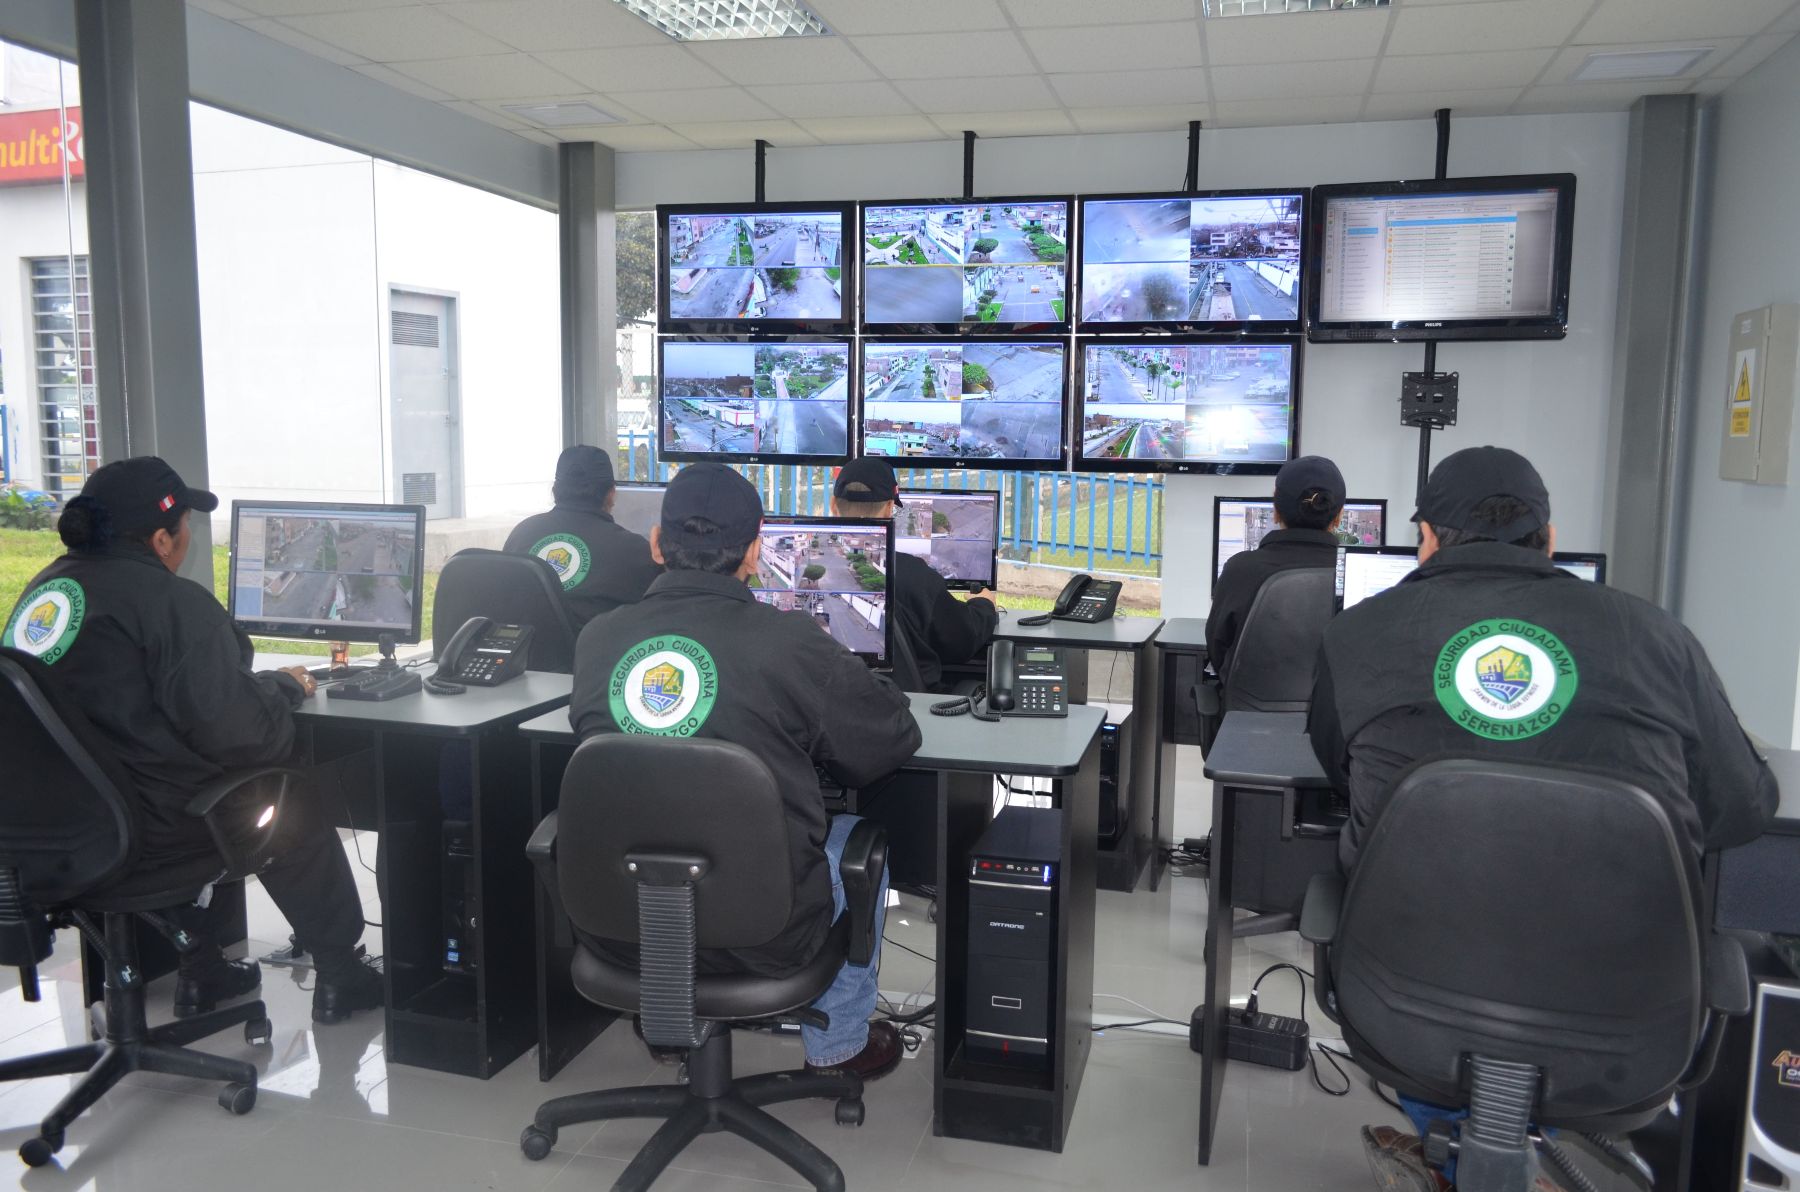 Nuevo Observatorio de Seguridad Ciudadana en Carmen de La Legua-Reynoso, equipado con modernas cámaras de videovigilancia. Foto: Municipalidad de Carmen de la Legua-Reynoso